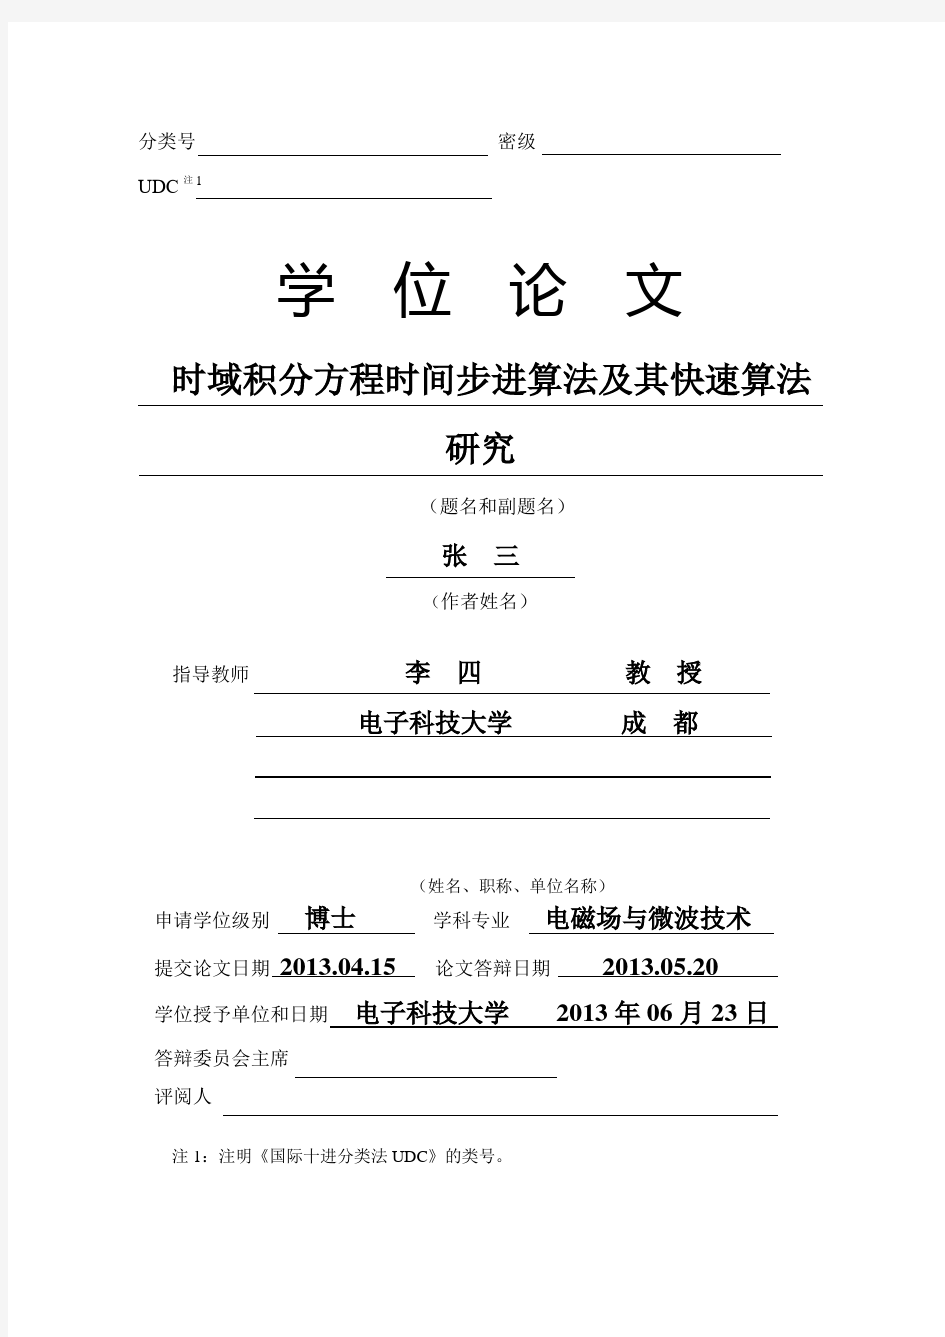 电子科技大学研究生学位论文(含研究报告)撰写范例(中文)